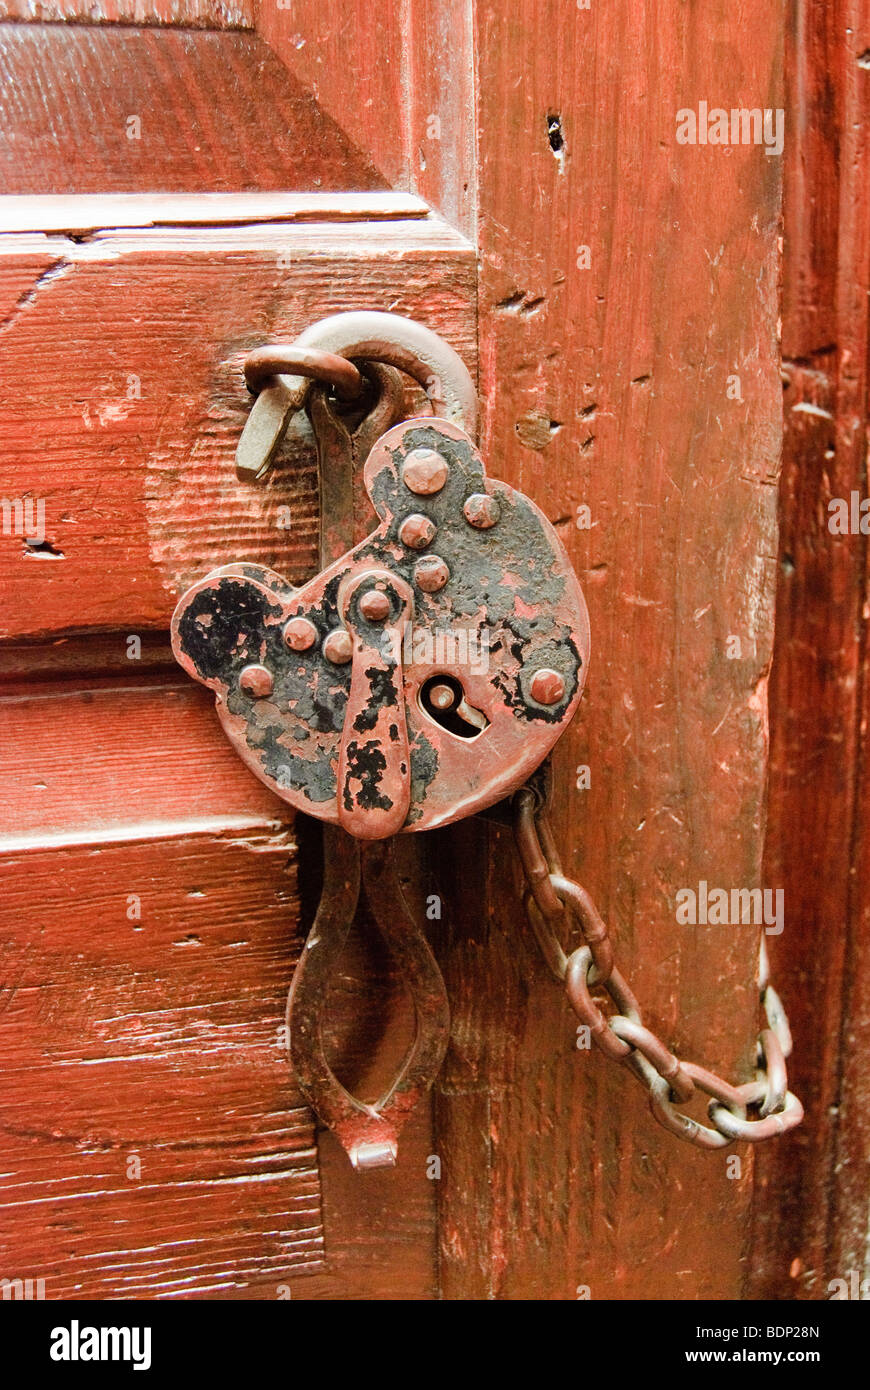 Vieux et cadenas rouillé avec chaîne à une porte rouge Banque D'Images